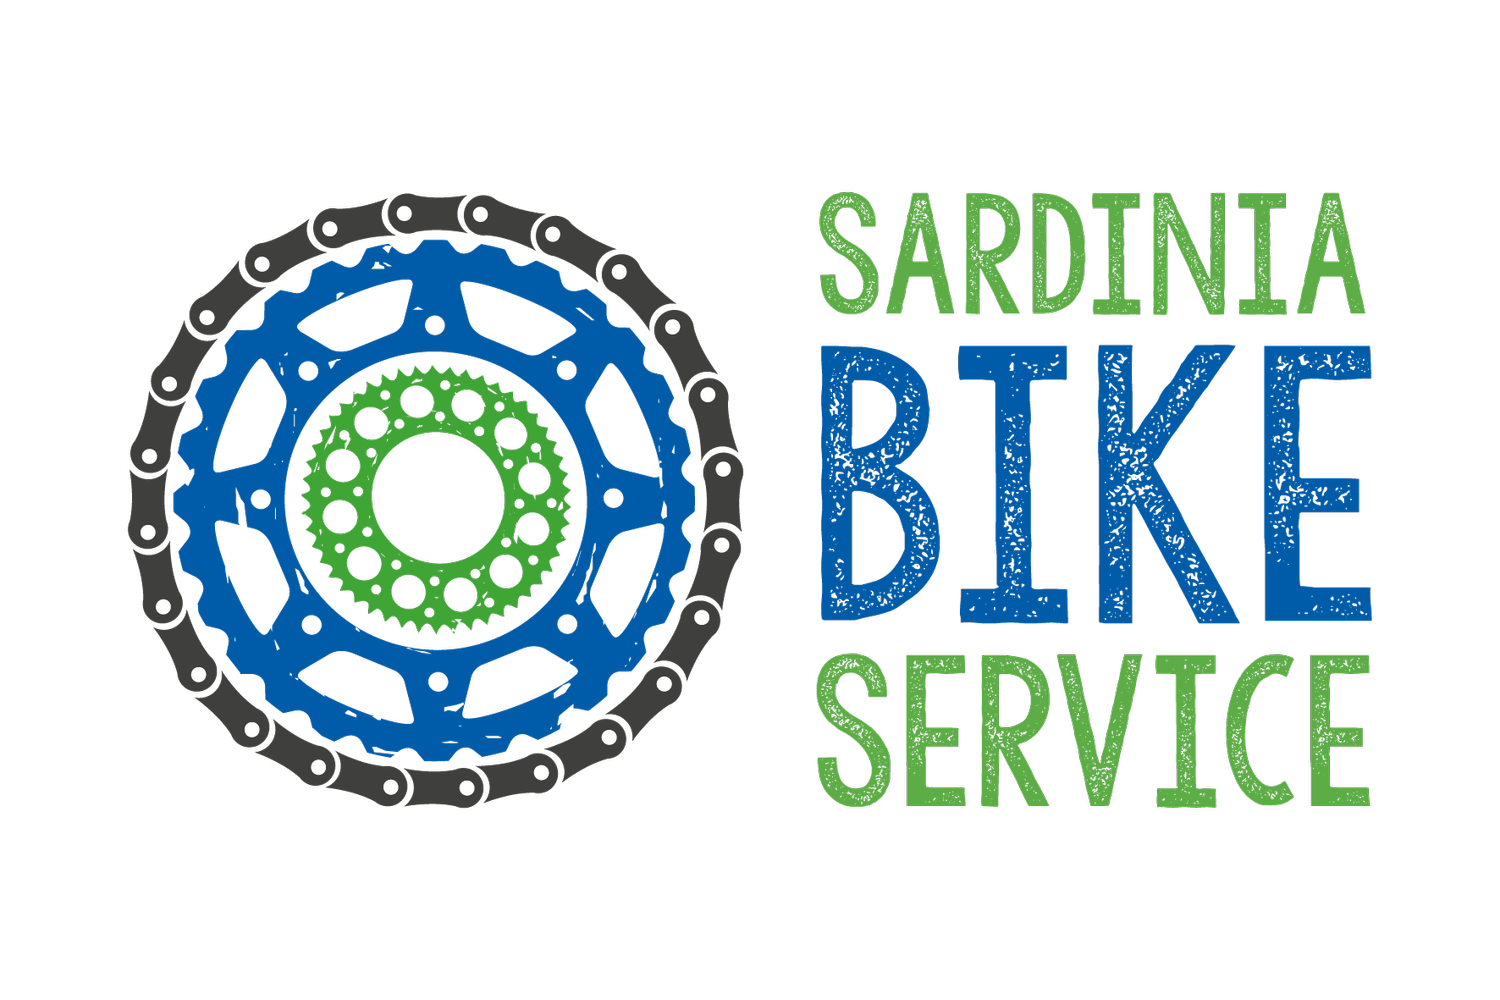 Sardinia Bike Service